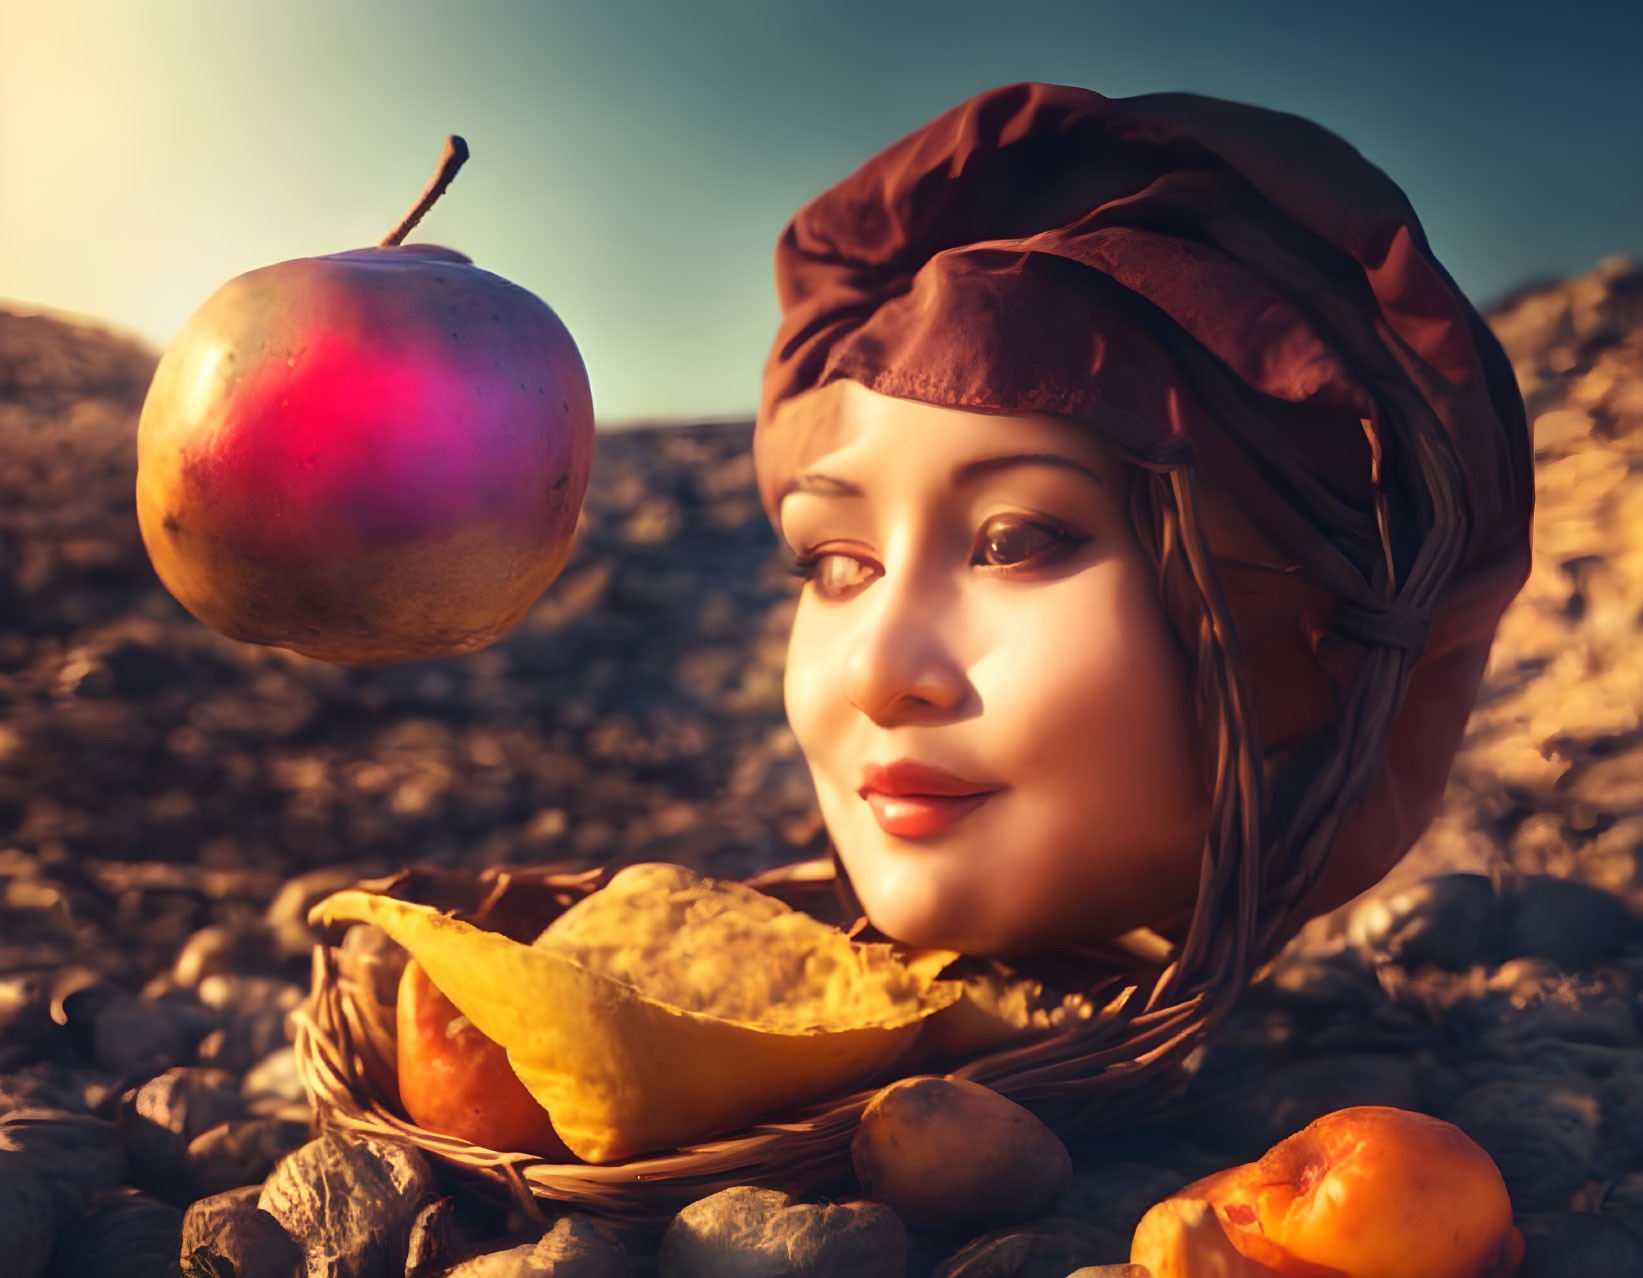 The human body partially transforms into fruits